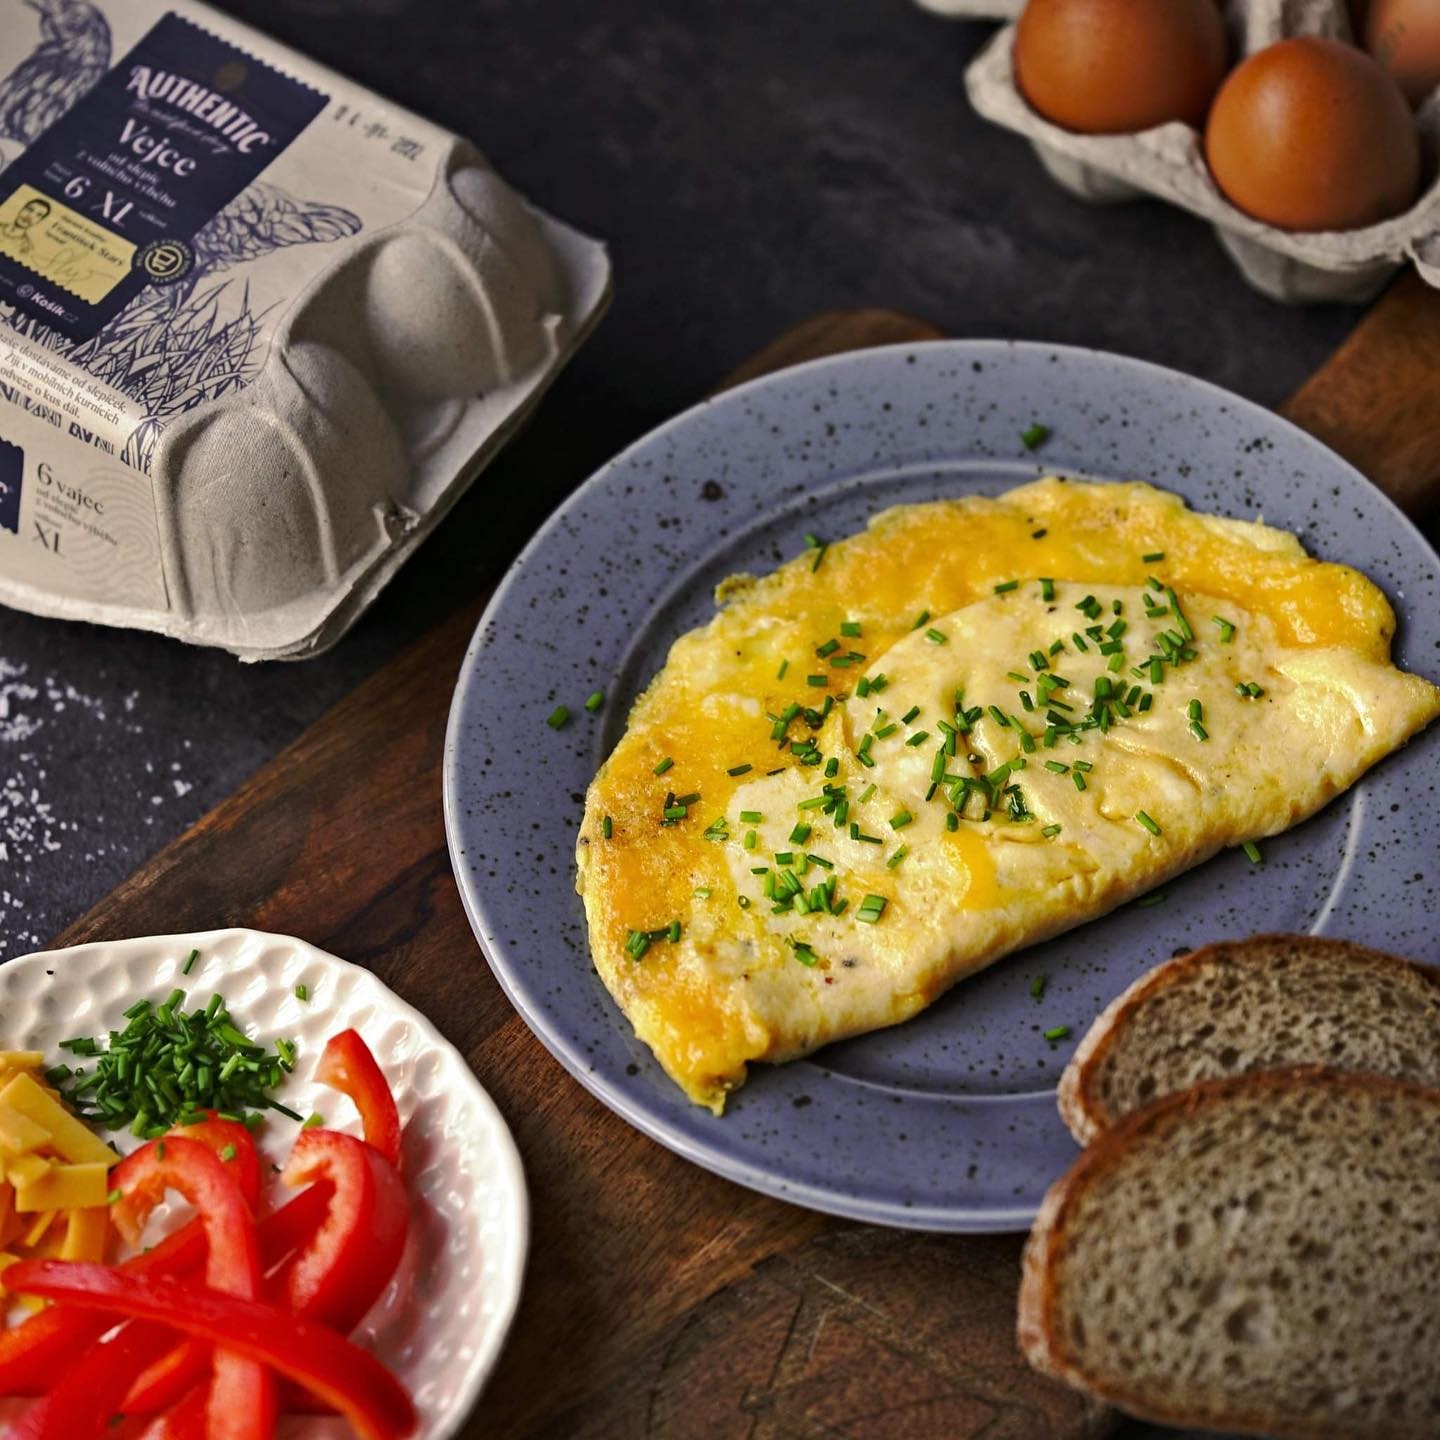 Vláčná omeleta z těch nejkvalitnějších vajec ochucená cheddarem a pažitkou - to zní jako skvělá (nejen) víkendová snídaně! 🍳 Základem omelety od @svatavacoolinarka jsou naše Authentic vejce od slepiček z volného výběhu. 🐔🥚
PS: Věděli jste, že obaly na naše vejce vyrábíme z papírových tašek, které od zákazníků vybereme zpět? ♻

Omeleta se sýrem 

3 vejce Authentic M 
1 lžička Ghí 
sůl 
čerstvě namletý pepř 
1 hrst strouhaného čedaru 
čerstvá pažitka 

Tři vejce rozklepněte do misky a rozšlehejte je se špetkou soli a čerstvě namletým pepřem. Nepřilnavou pánev zahřejte na plotýnce s mírným plamenem. Rozpusťte na ní Ghí a dokud není příliš rozpálená, nalijte do pánve vaječnou směs. Omeletu smažte jen velmi zvolna. Ze začátku vejce silikonovou stěrkou jemně míchejte, aby získala strukturu krémových míchaných vajec a uhlaďte ji. Plamen plotýnky mějte stále jen velmi slabý. Následně omeletu posypte sýrem a nechte cca minutu dojít, tak aby na povrchu omeleta měla stále strukturu míchaných vajec. Pak ji opatrně přeložte a následně přesuňte na talíř.